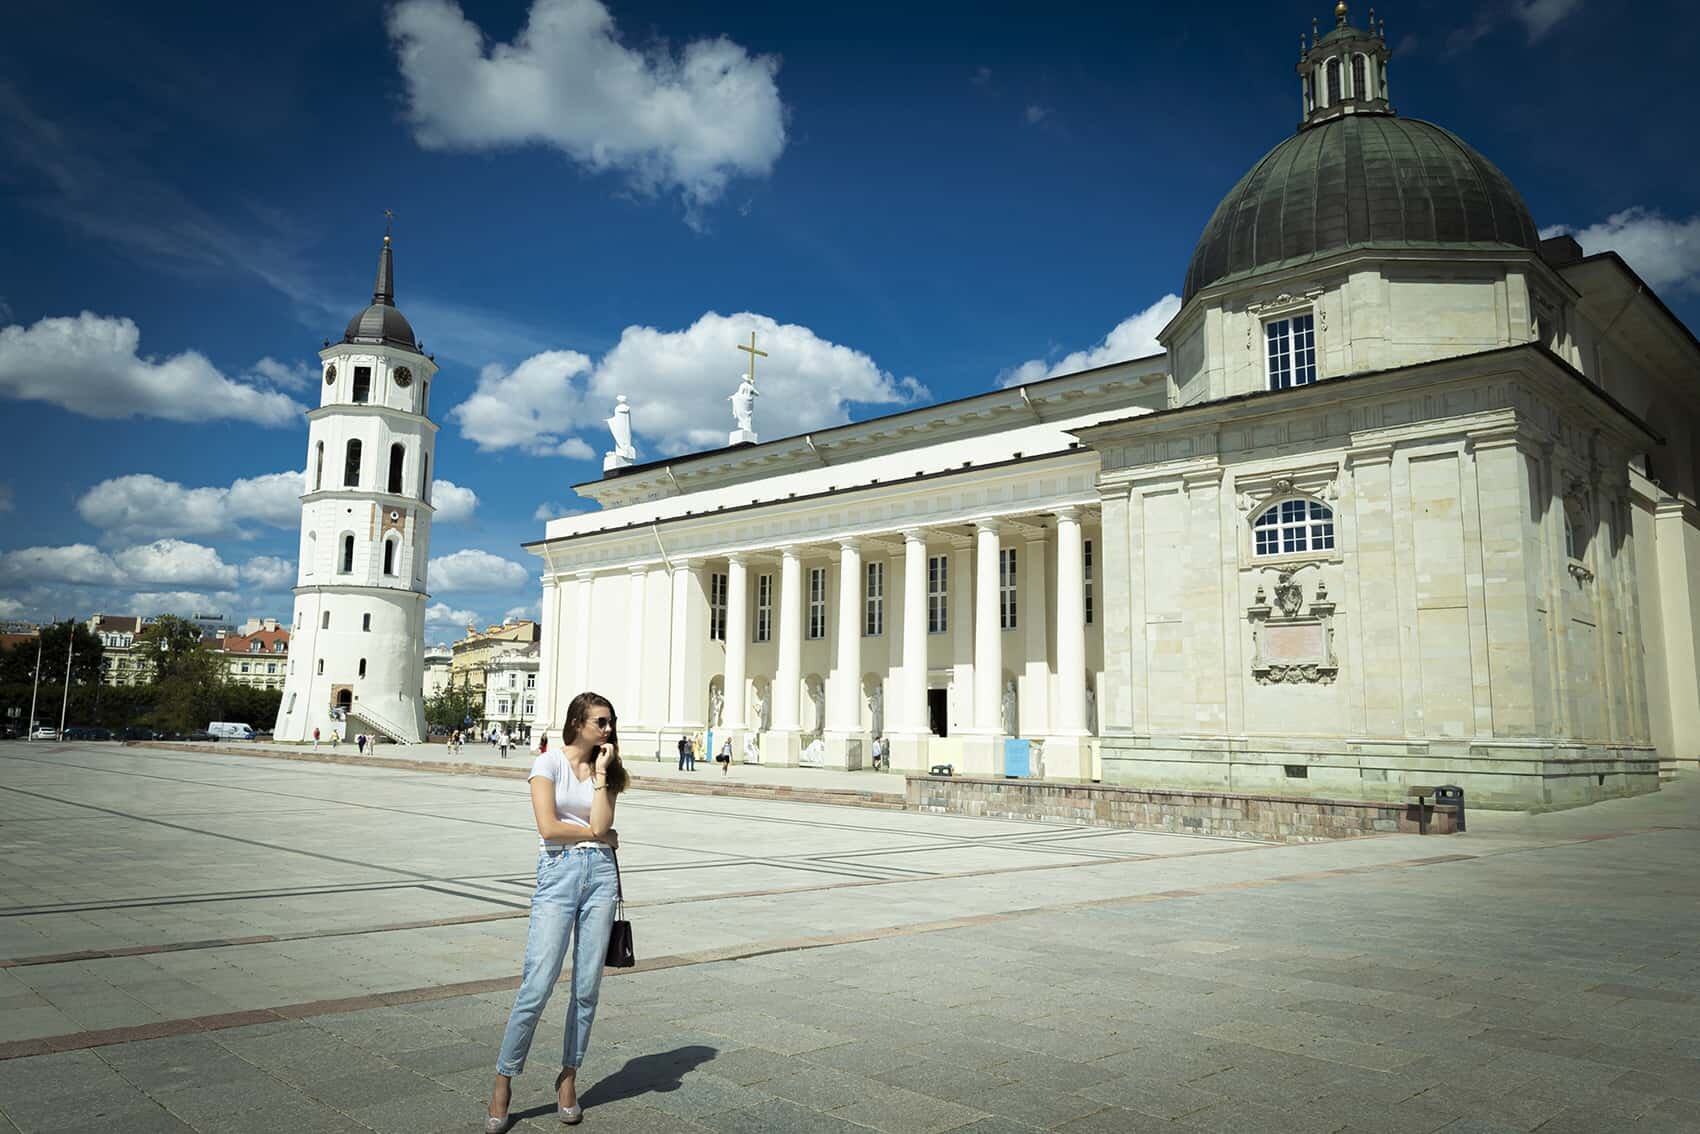 Enjoy Vilnius with a unique photoshoot